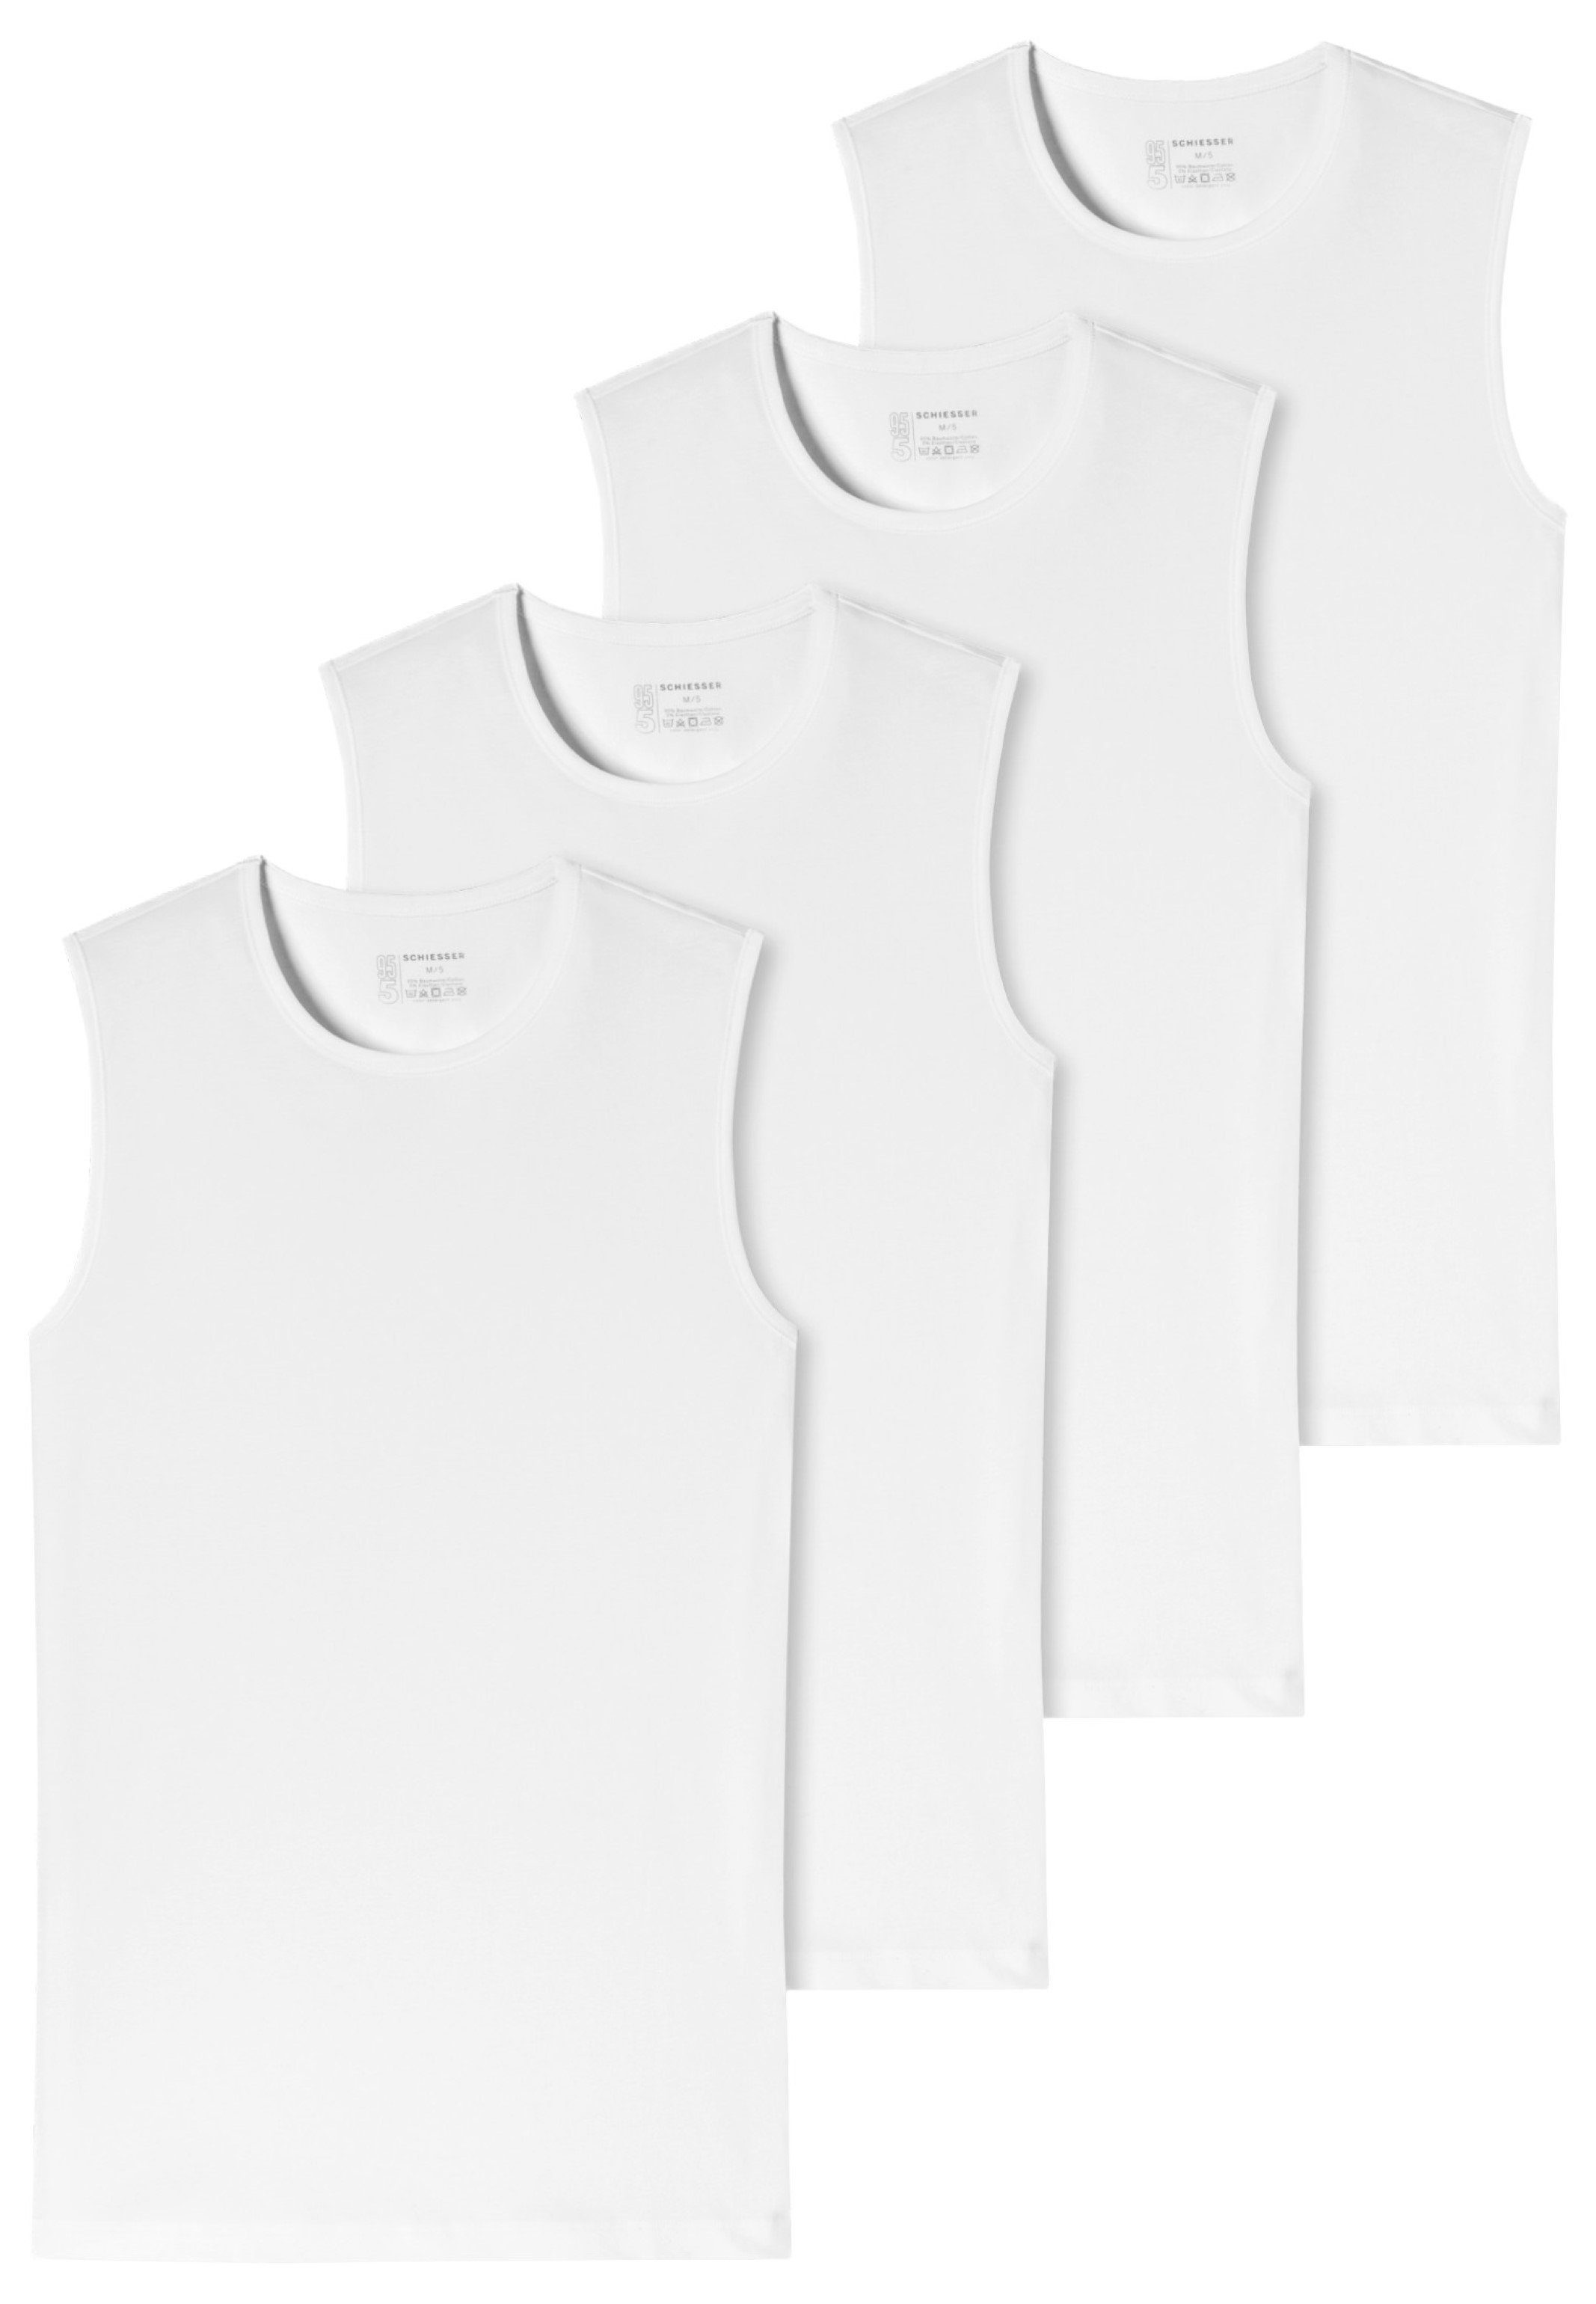 Schiesser Unterhemd 4er-Pack 95/5 Tanktop - Unterhemd / - Cotton Organic Baumwolle Komfortabler Rundhalsausschnitt (Spar-Set, - 4-St) - Weiß